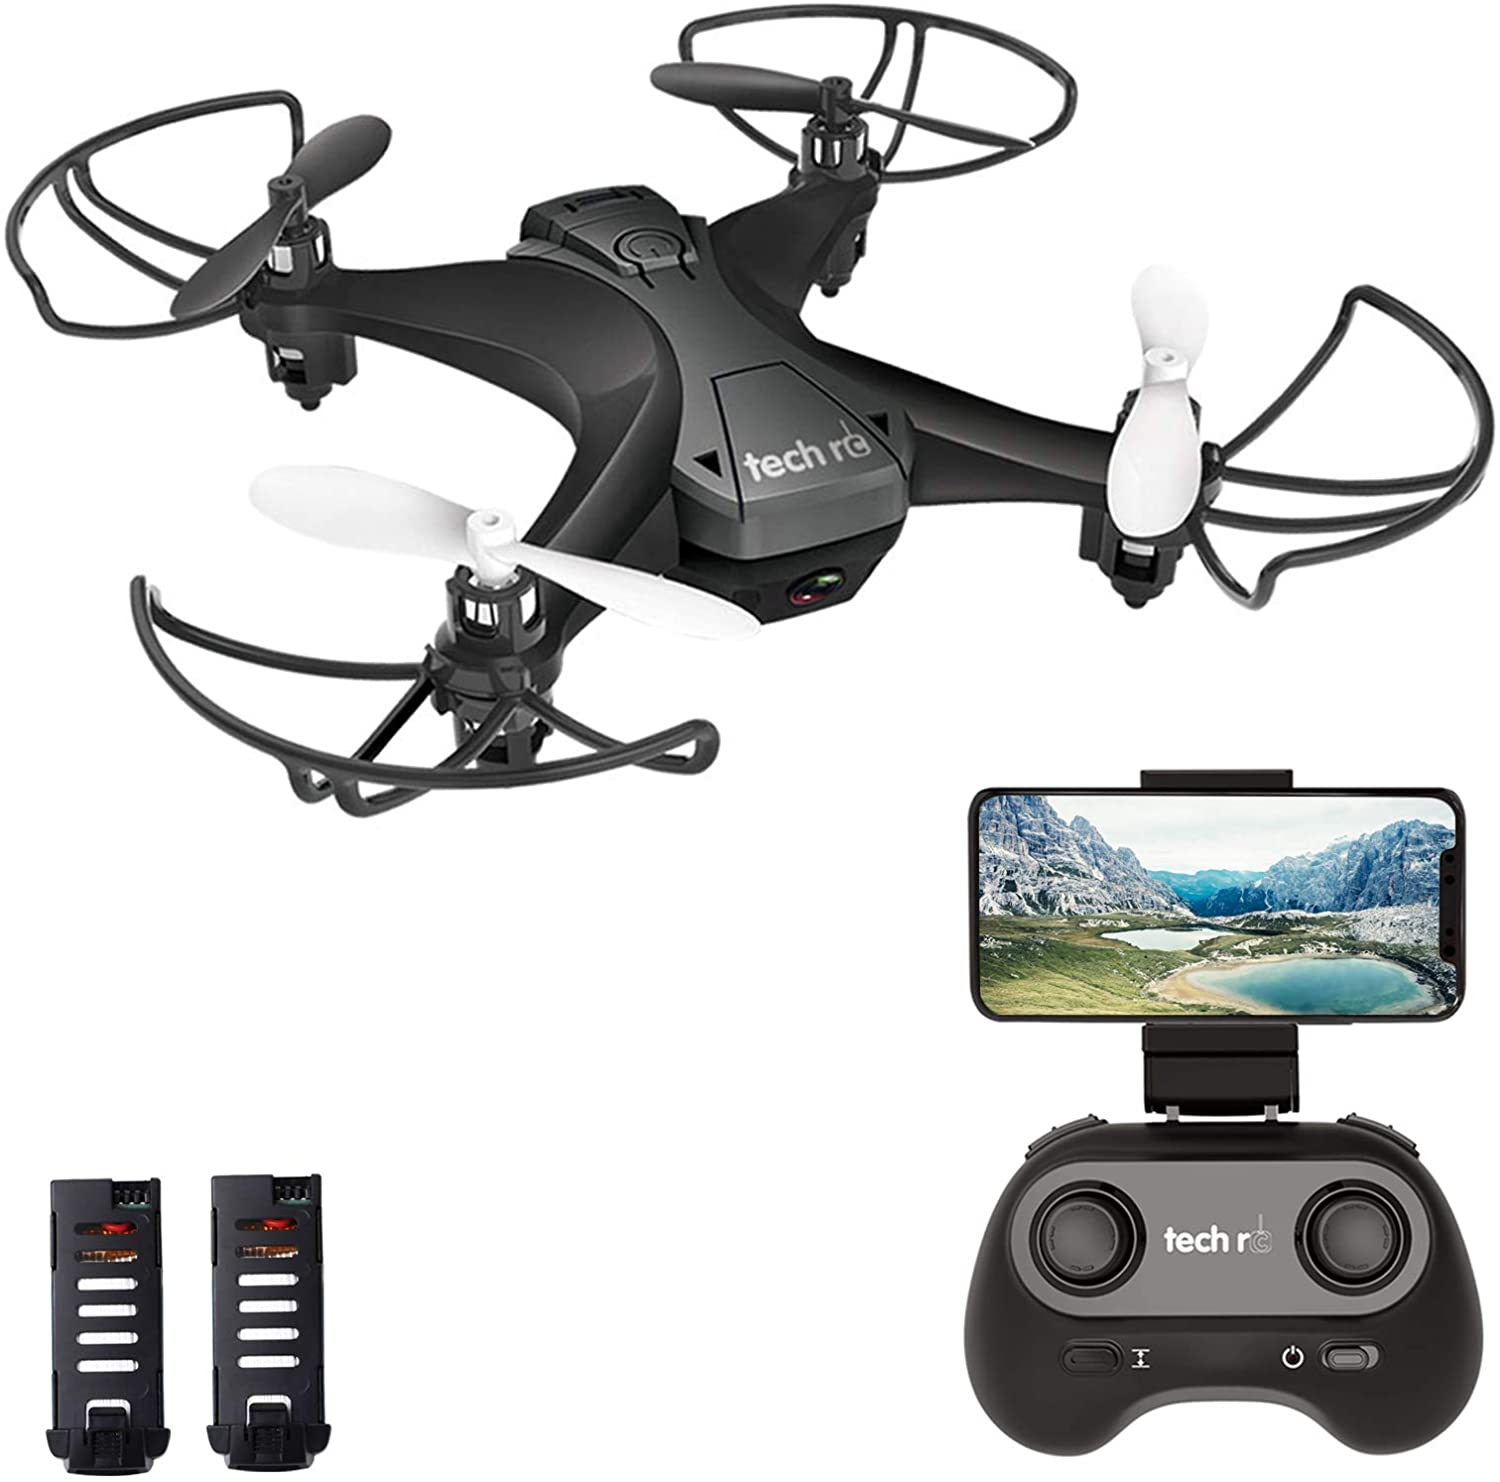 tech rc Mini Drone with Camera FPV Live Video Wifi